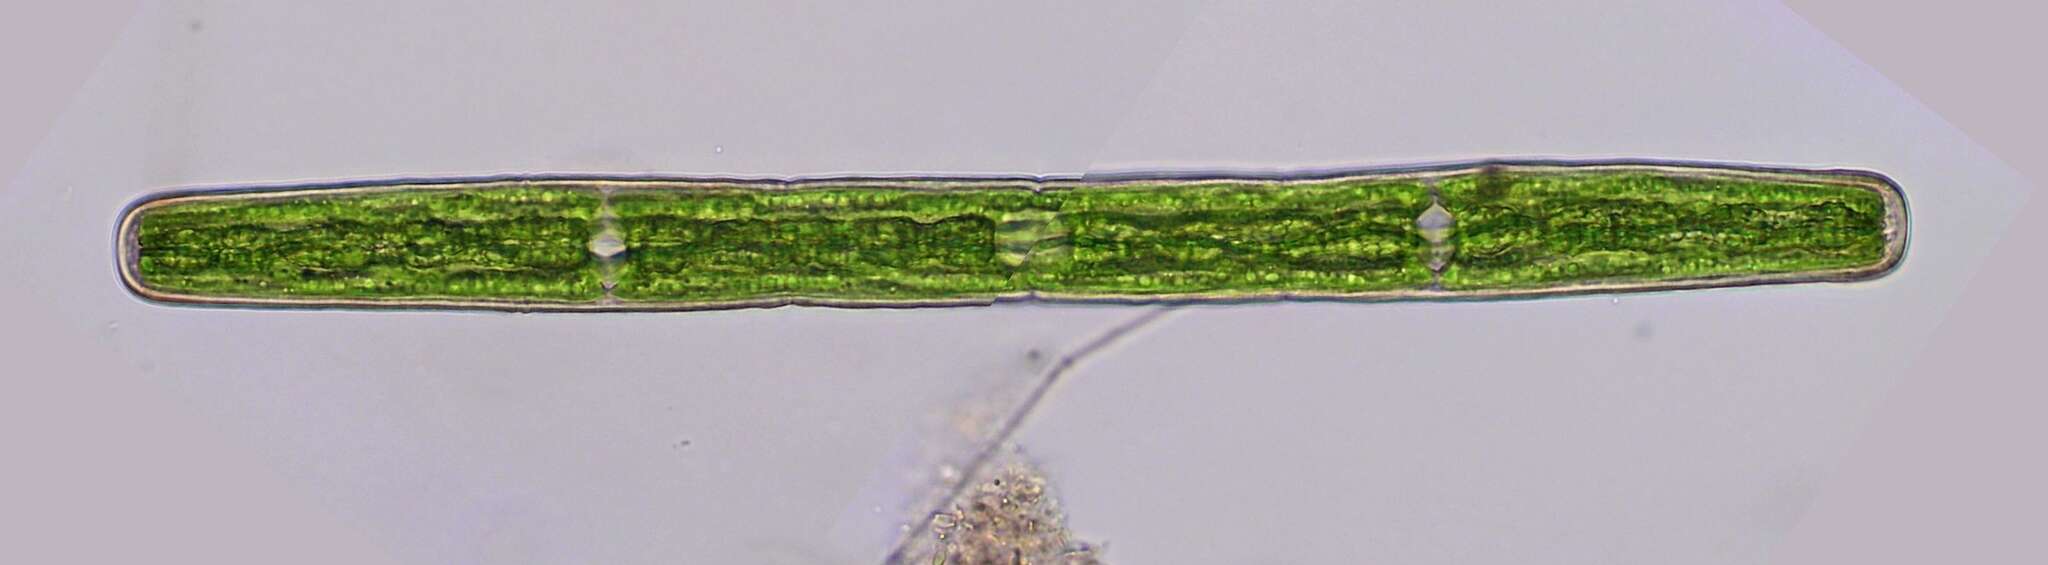 Image de Penium spirostriolatum